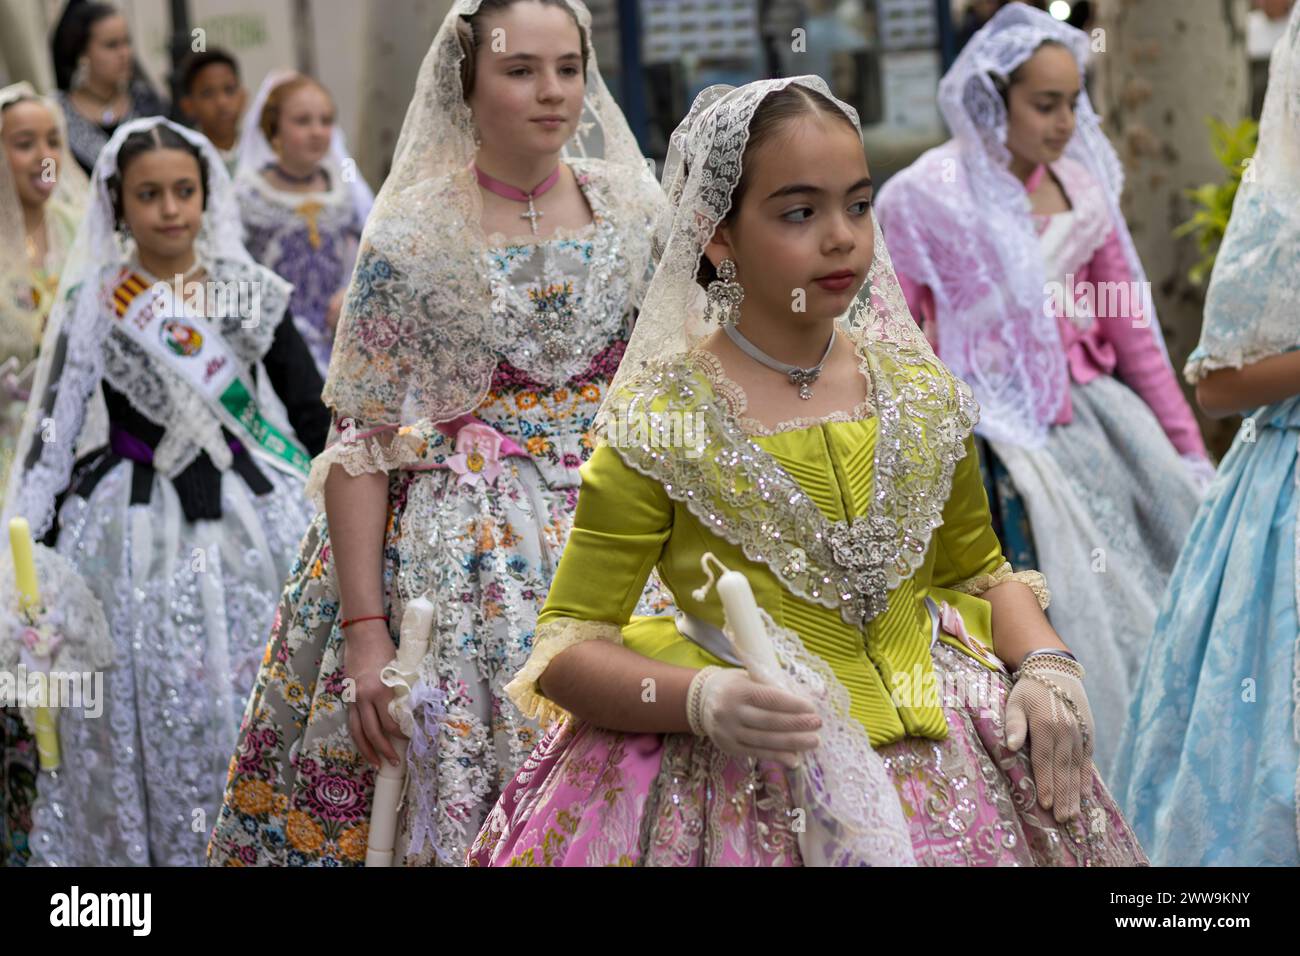 Jugendliche Eleganz im Fallas; Junge Falleras in lebendigen Kleidern zelebrieren Gandias Traditionen, ihre Kostüme sind ein Kaleidoskop der Freude des Festivals. Stockfoto